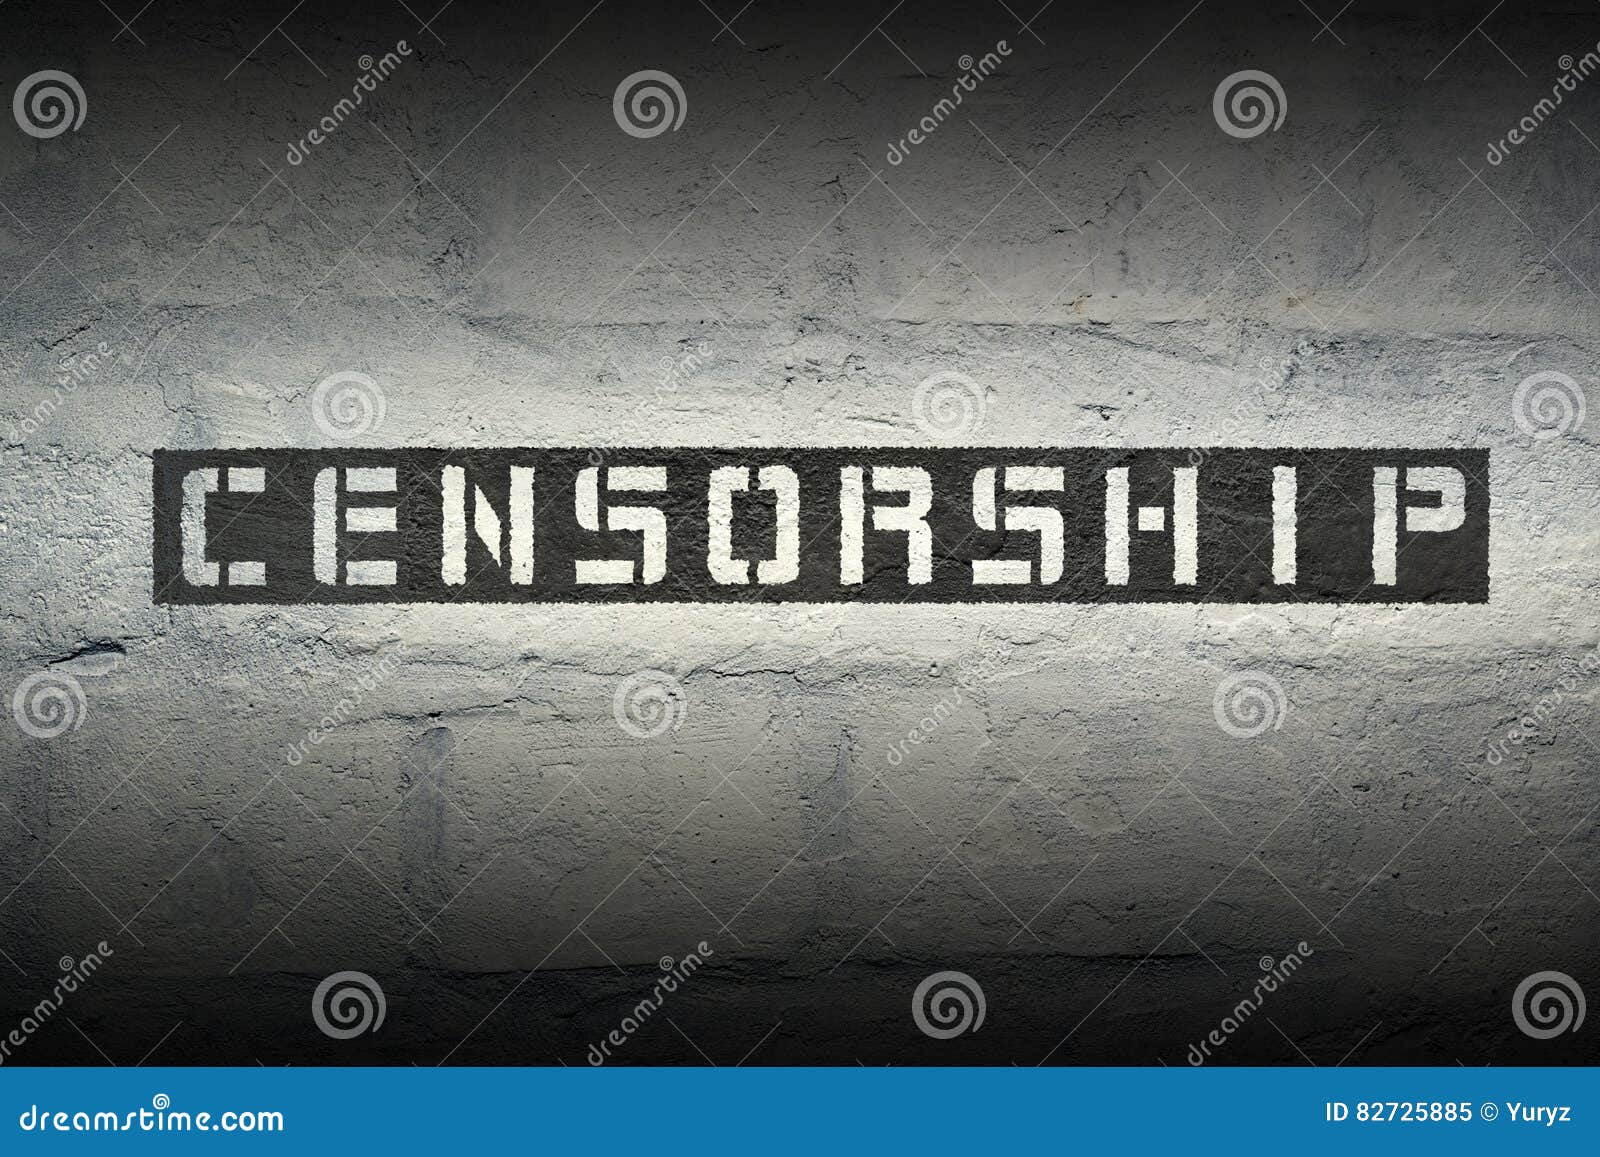 censorship word gr